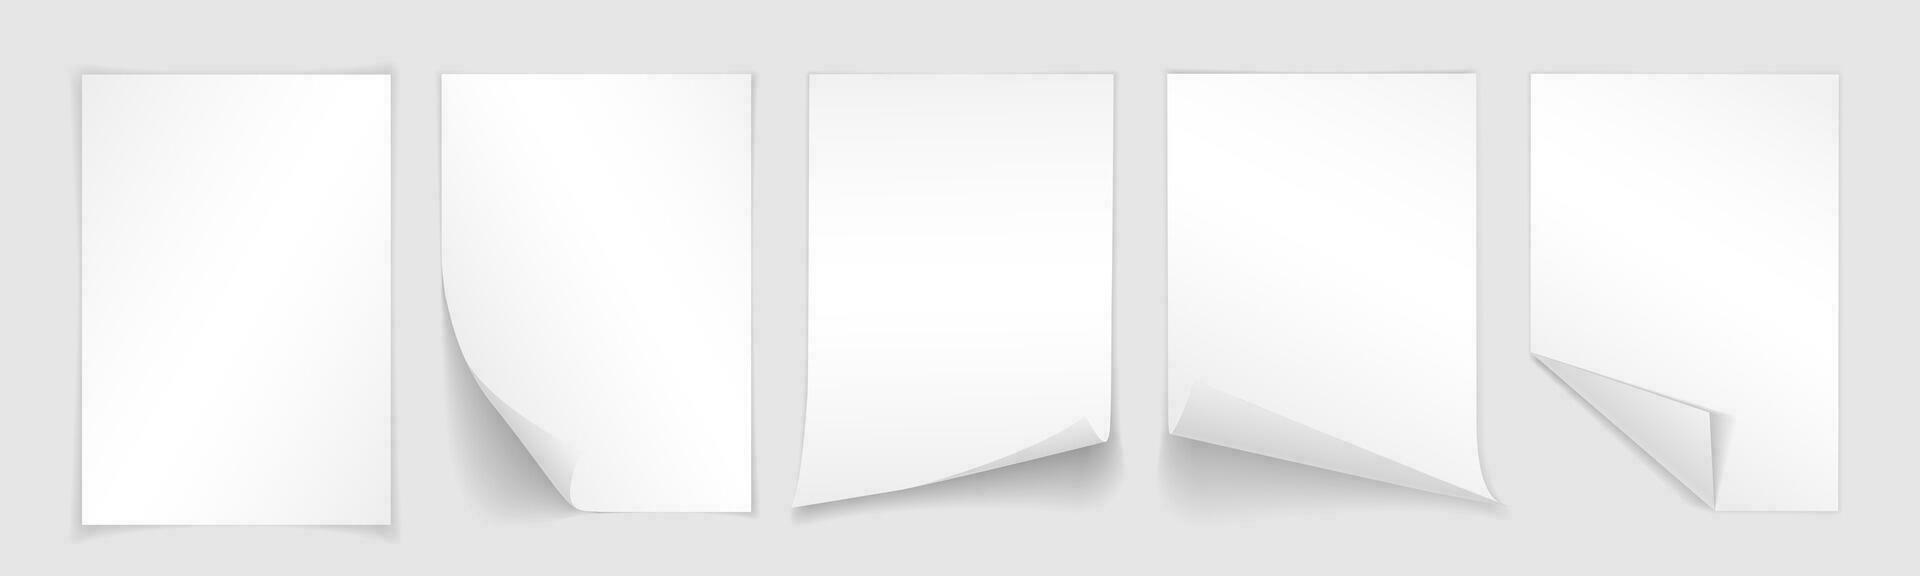 tom a4 ark av vit papper med ringlad hörn och skugga, mall för din design. uppsättning. vektor illustration